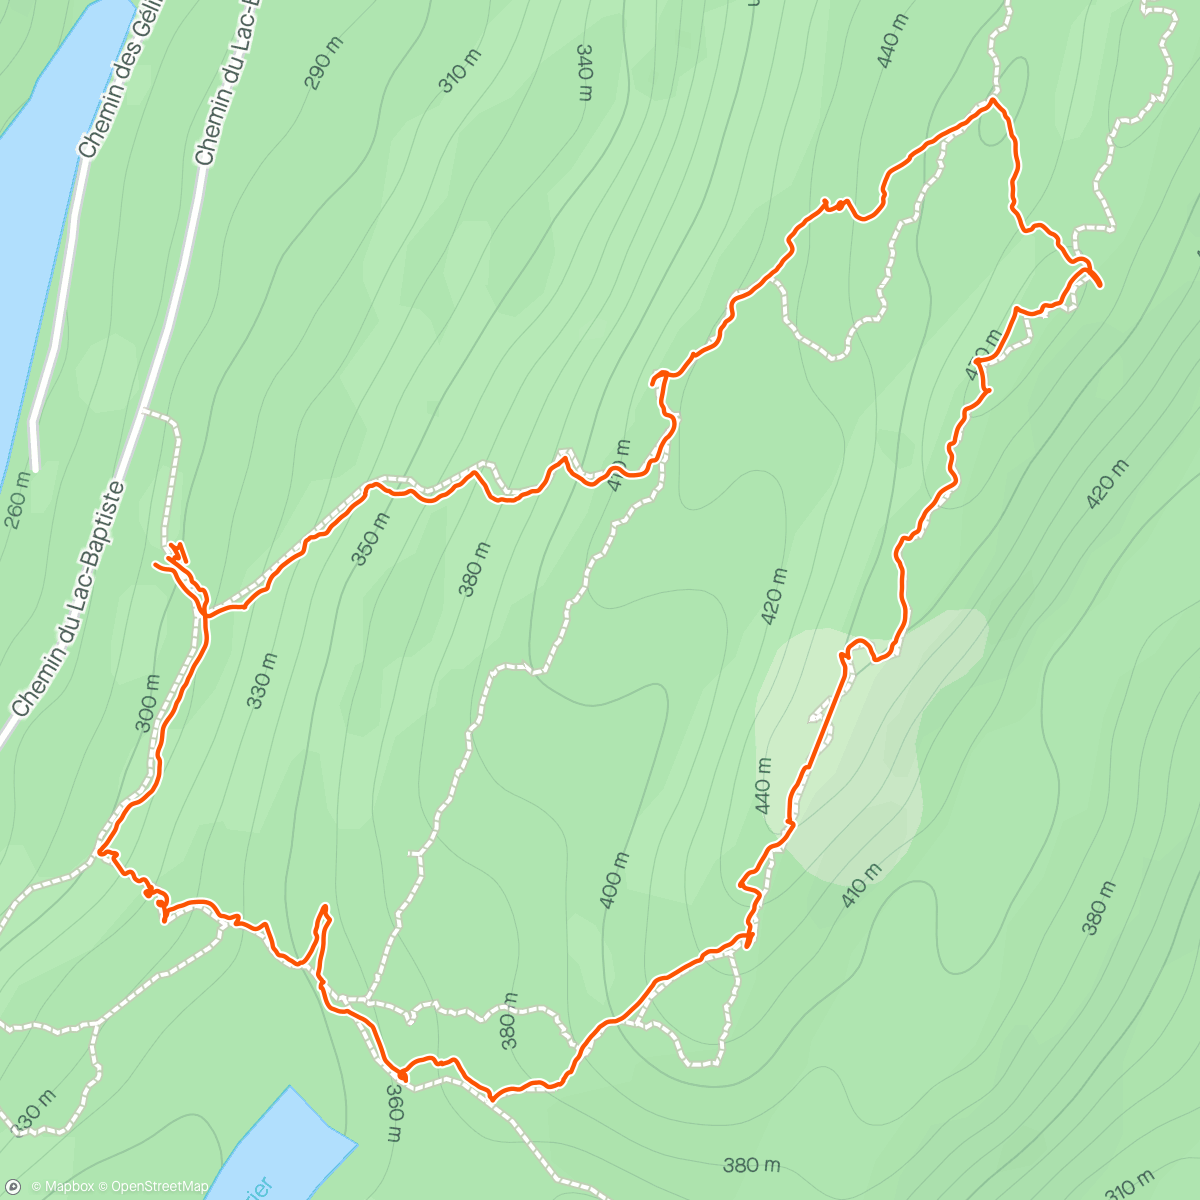 「Boucle de la montagne Verte」活動的地圖